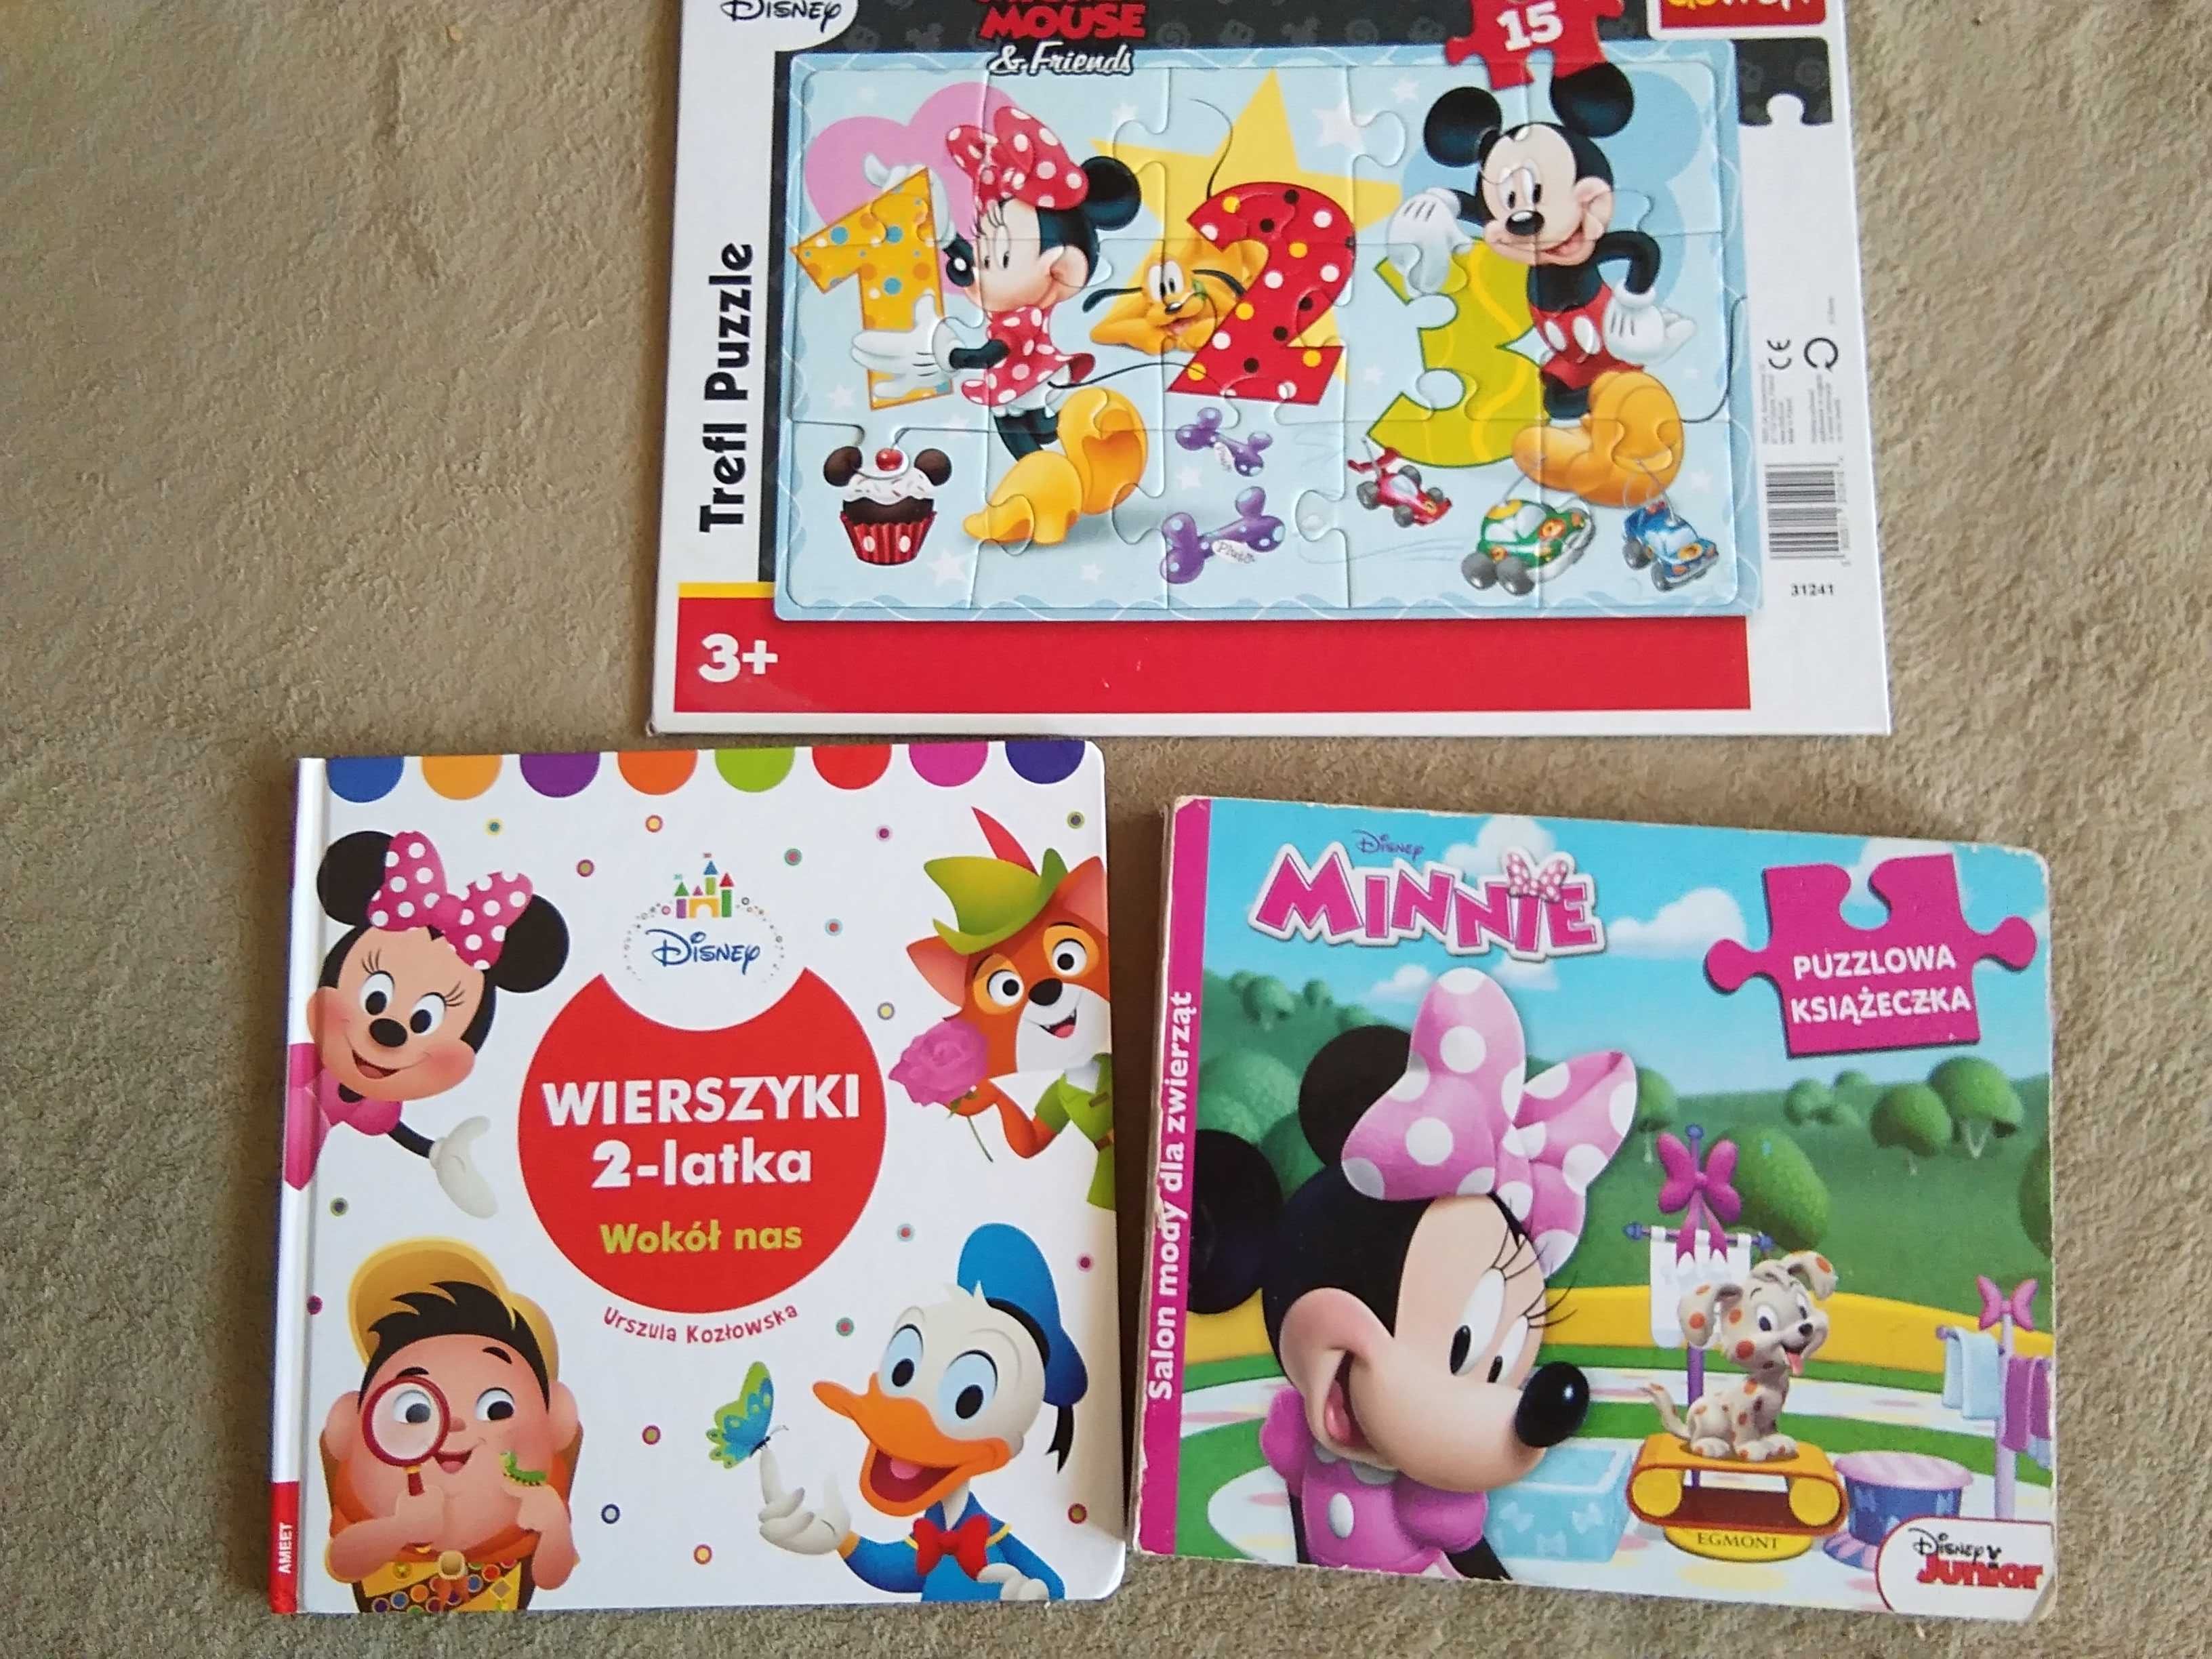 Myszka Minnie puzzle 15 szt, książka z puzzlami, wierszyki Disney